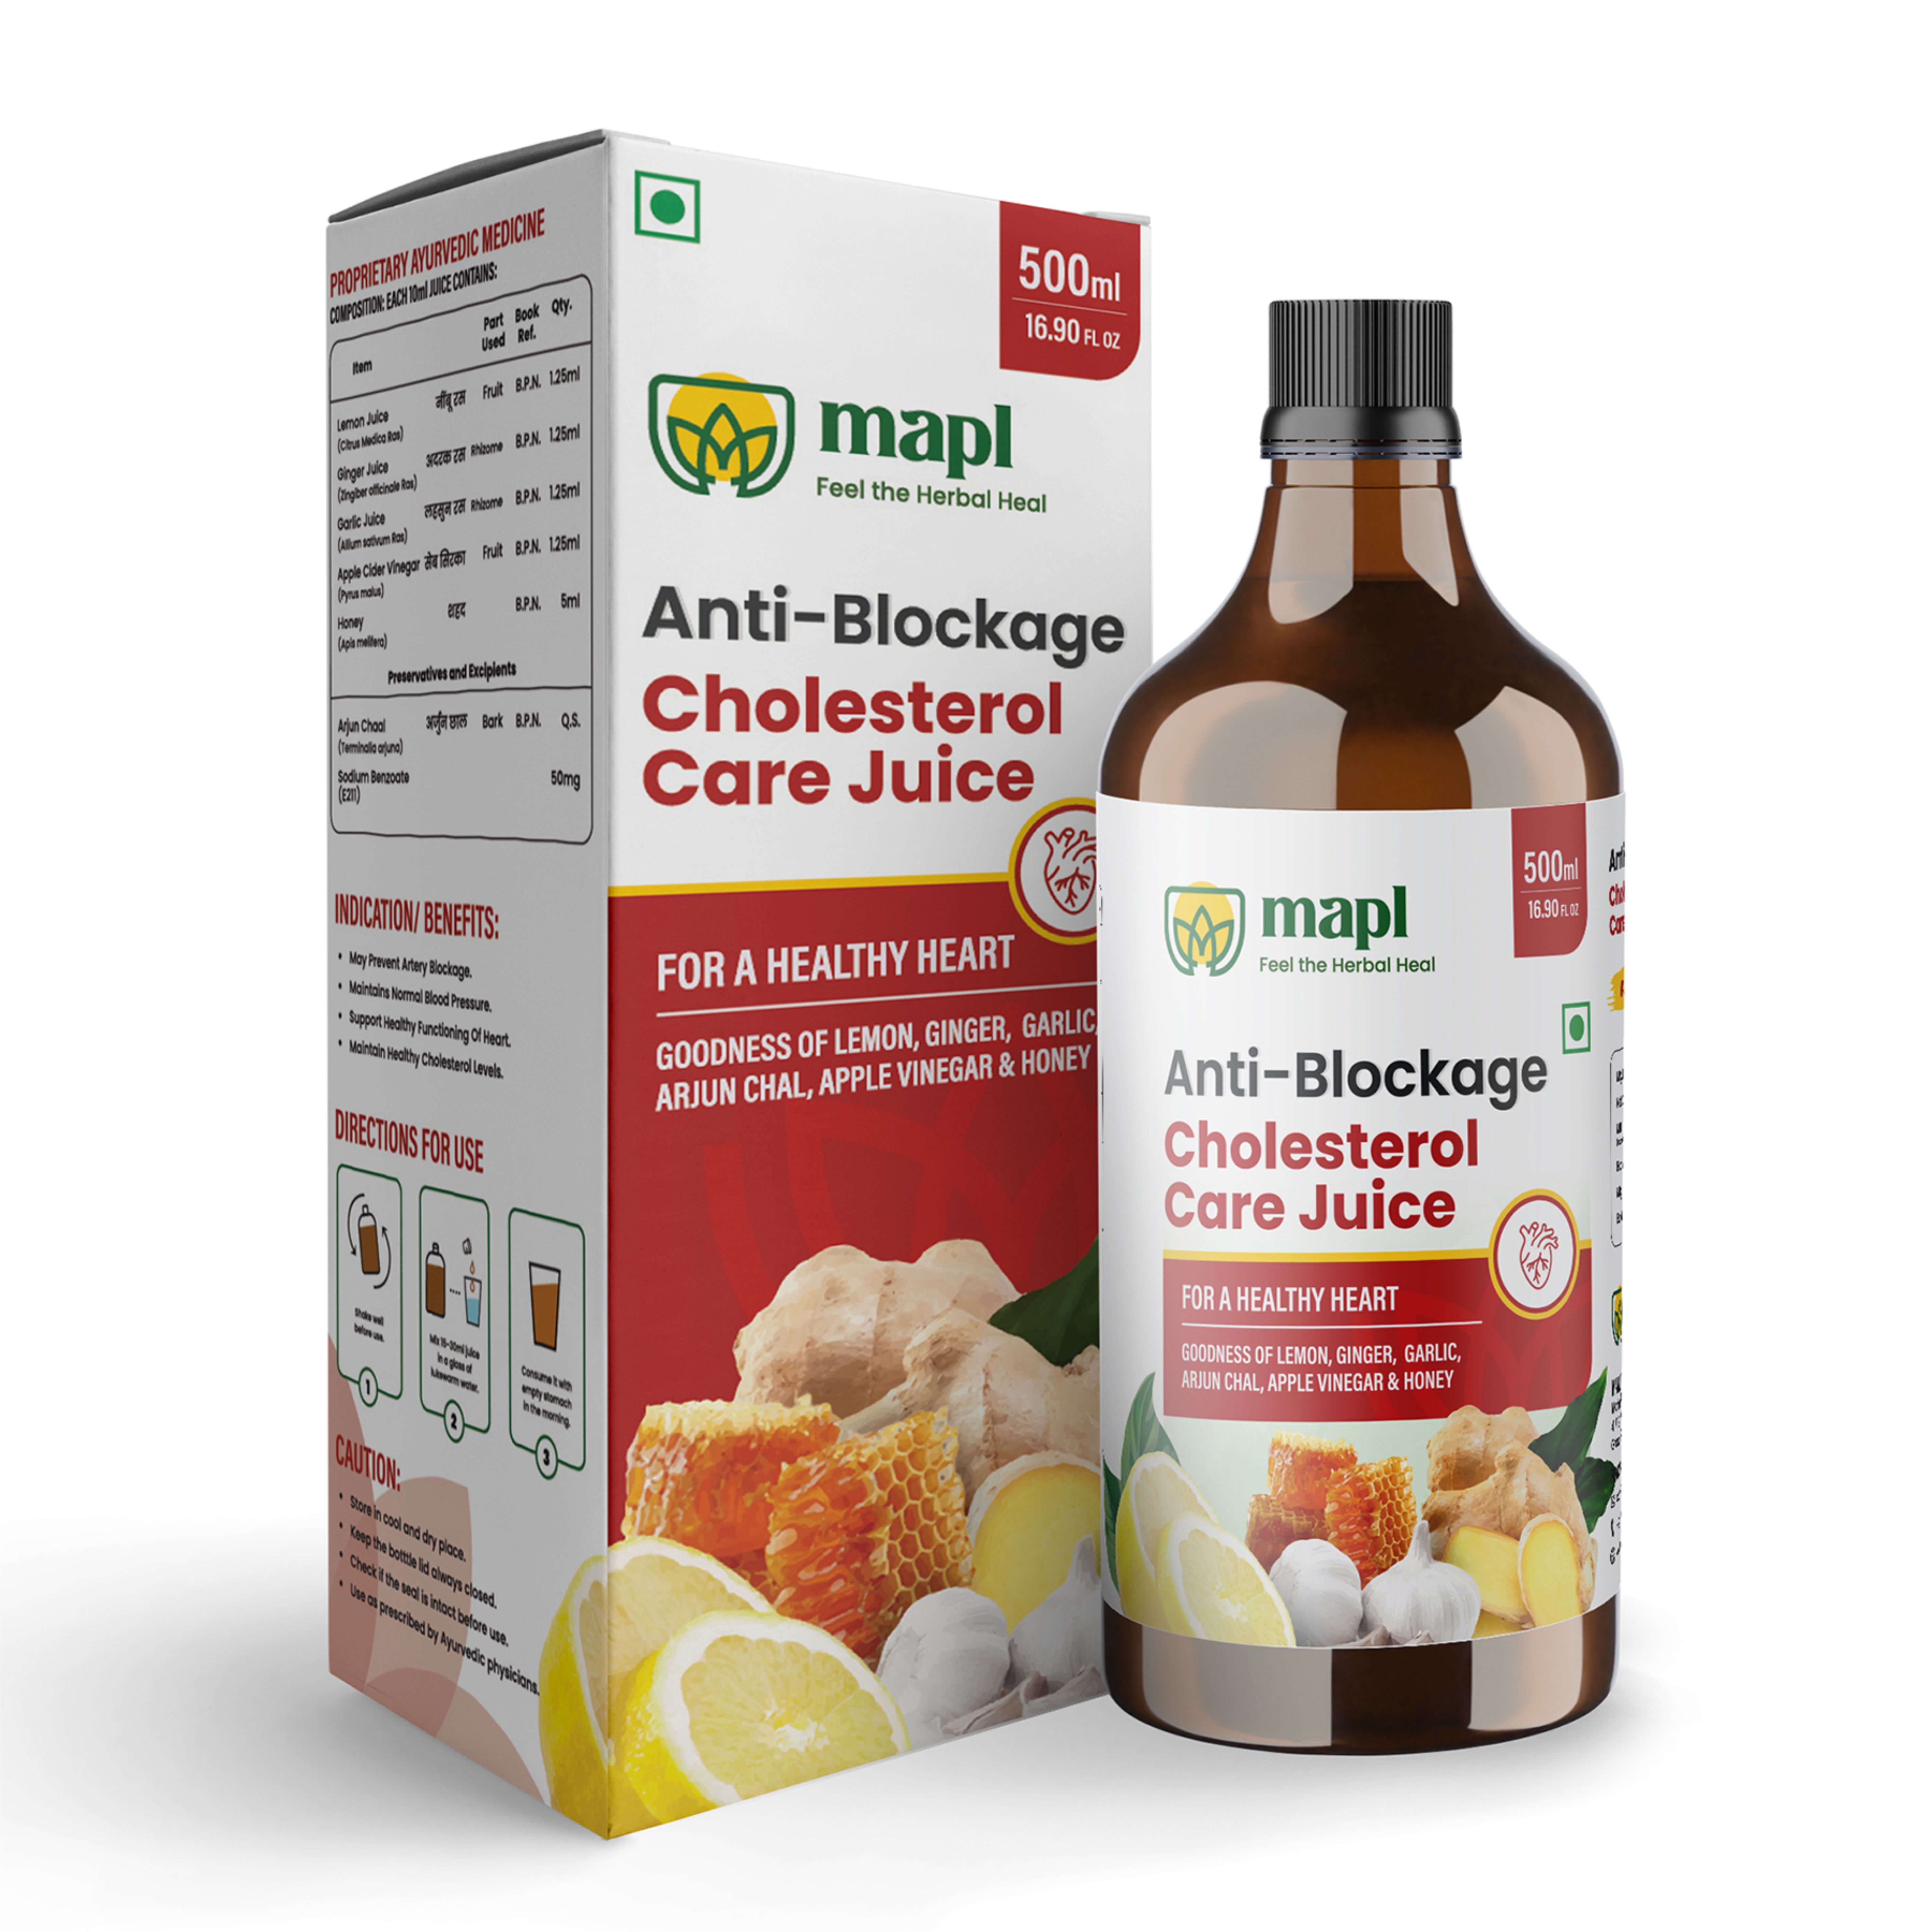 Antiblockage Cholesterol Care Juice